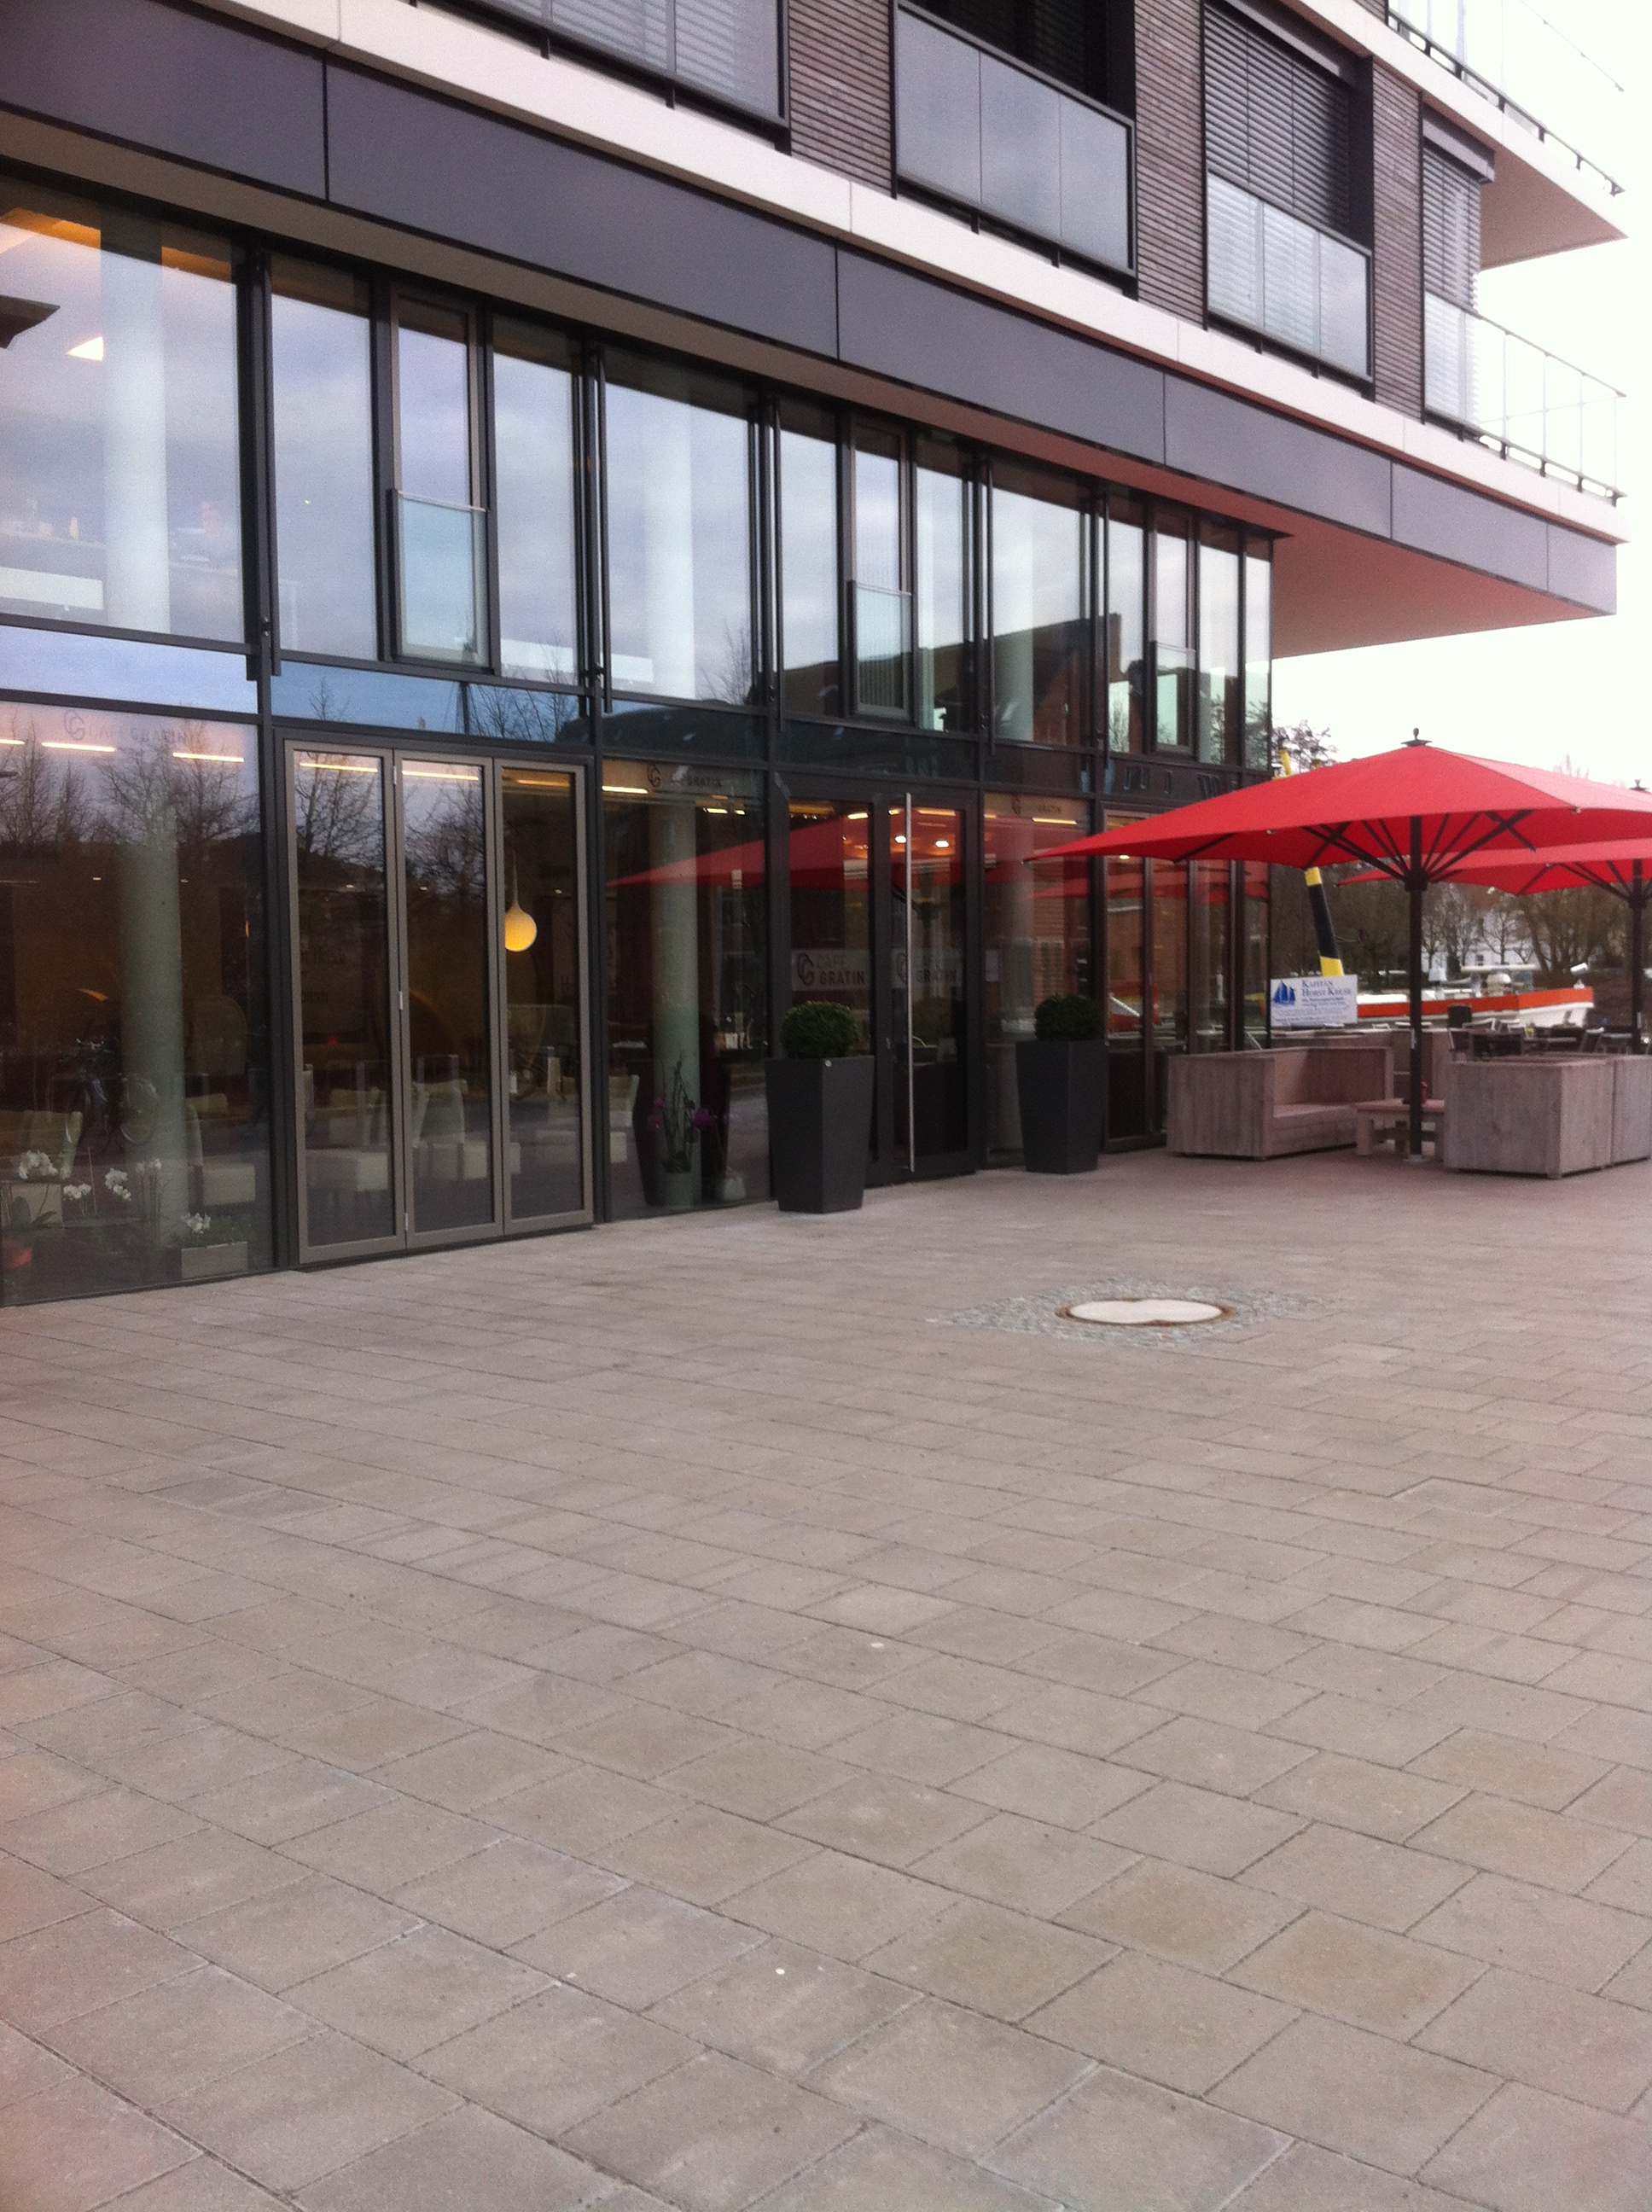 Café Gratin in Oldenburg bei der Agentur für Arbeit